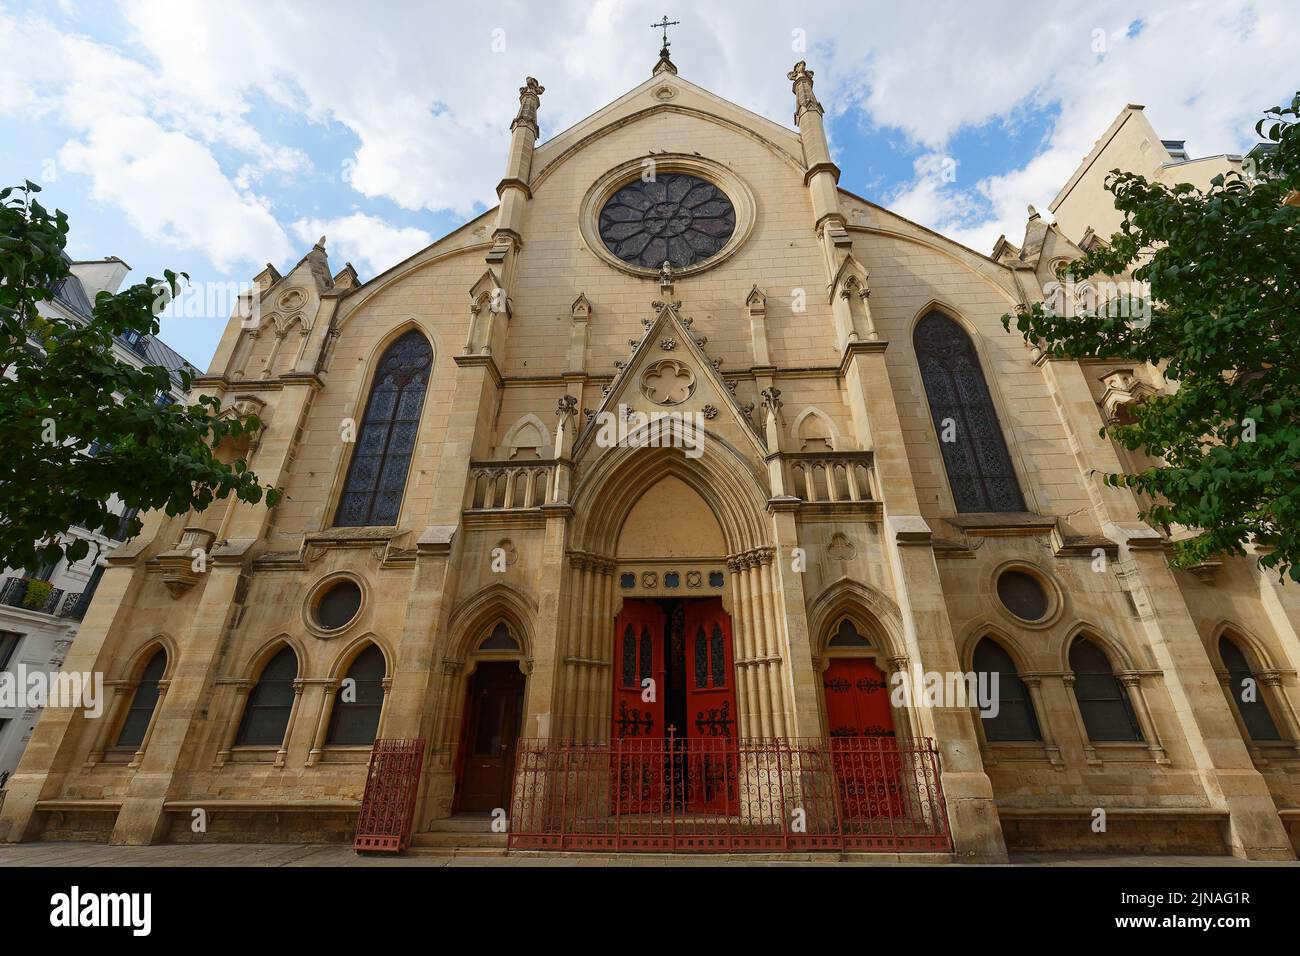 Saint-Eugène-Sainte-Cécile est une église catholique romaine située dans le quartier de Paris en 9th. France. Banque D'Images